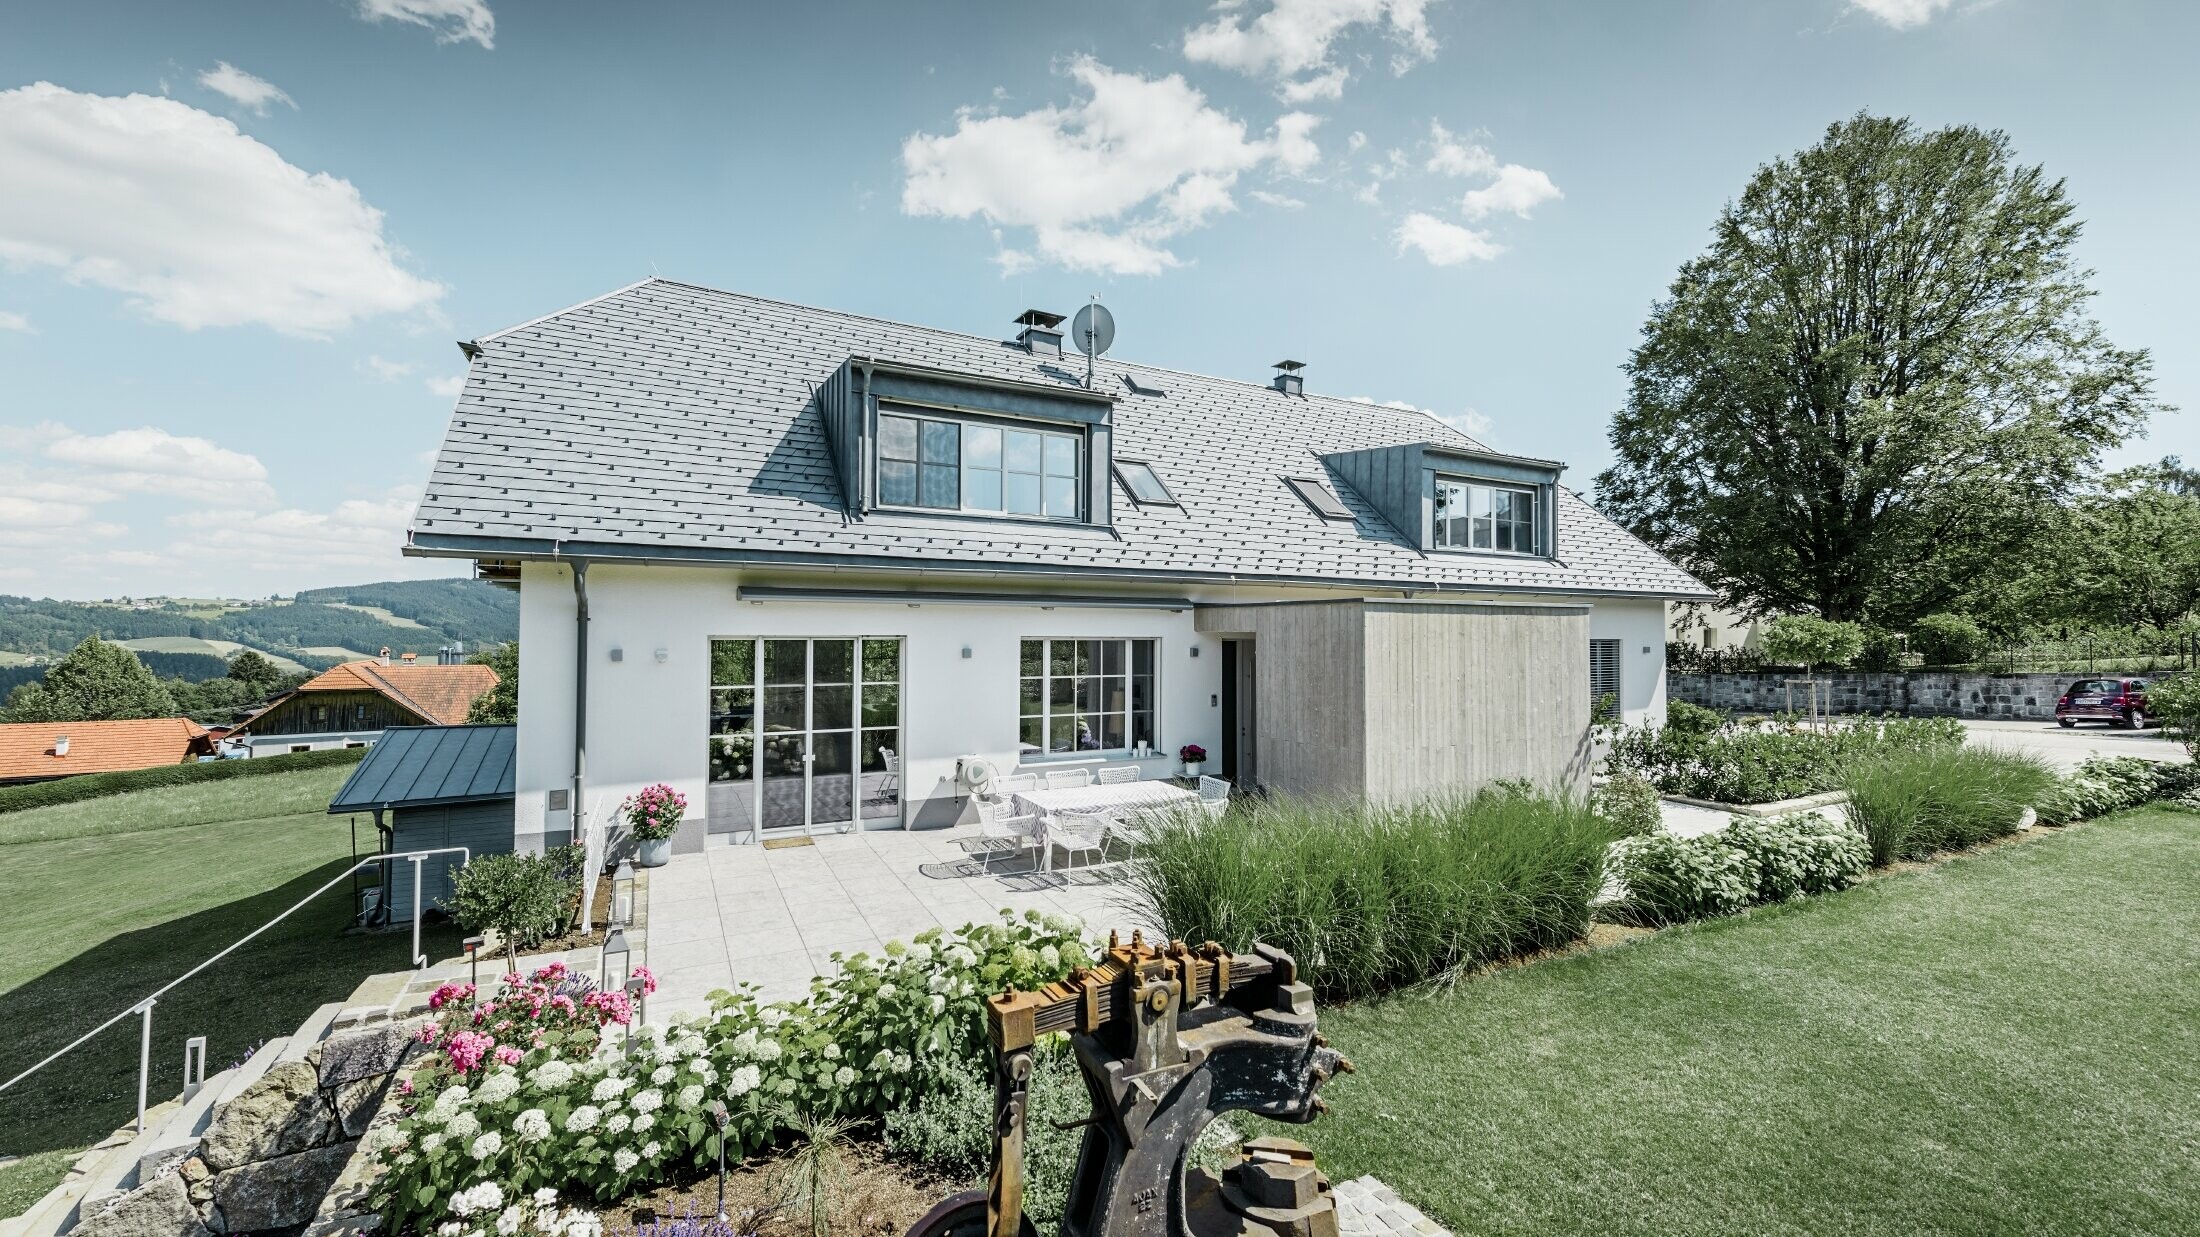 Klasszikus családi ház csonkakontyos tetővel; ház márványszürke színű PREFA tetőfedő zsindellyel felújított tetővel, gyönyörűen parkosított kerttel és tágas terasszal.